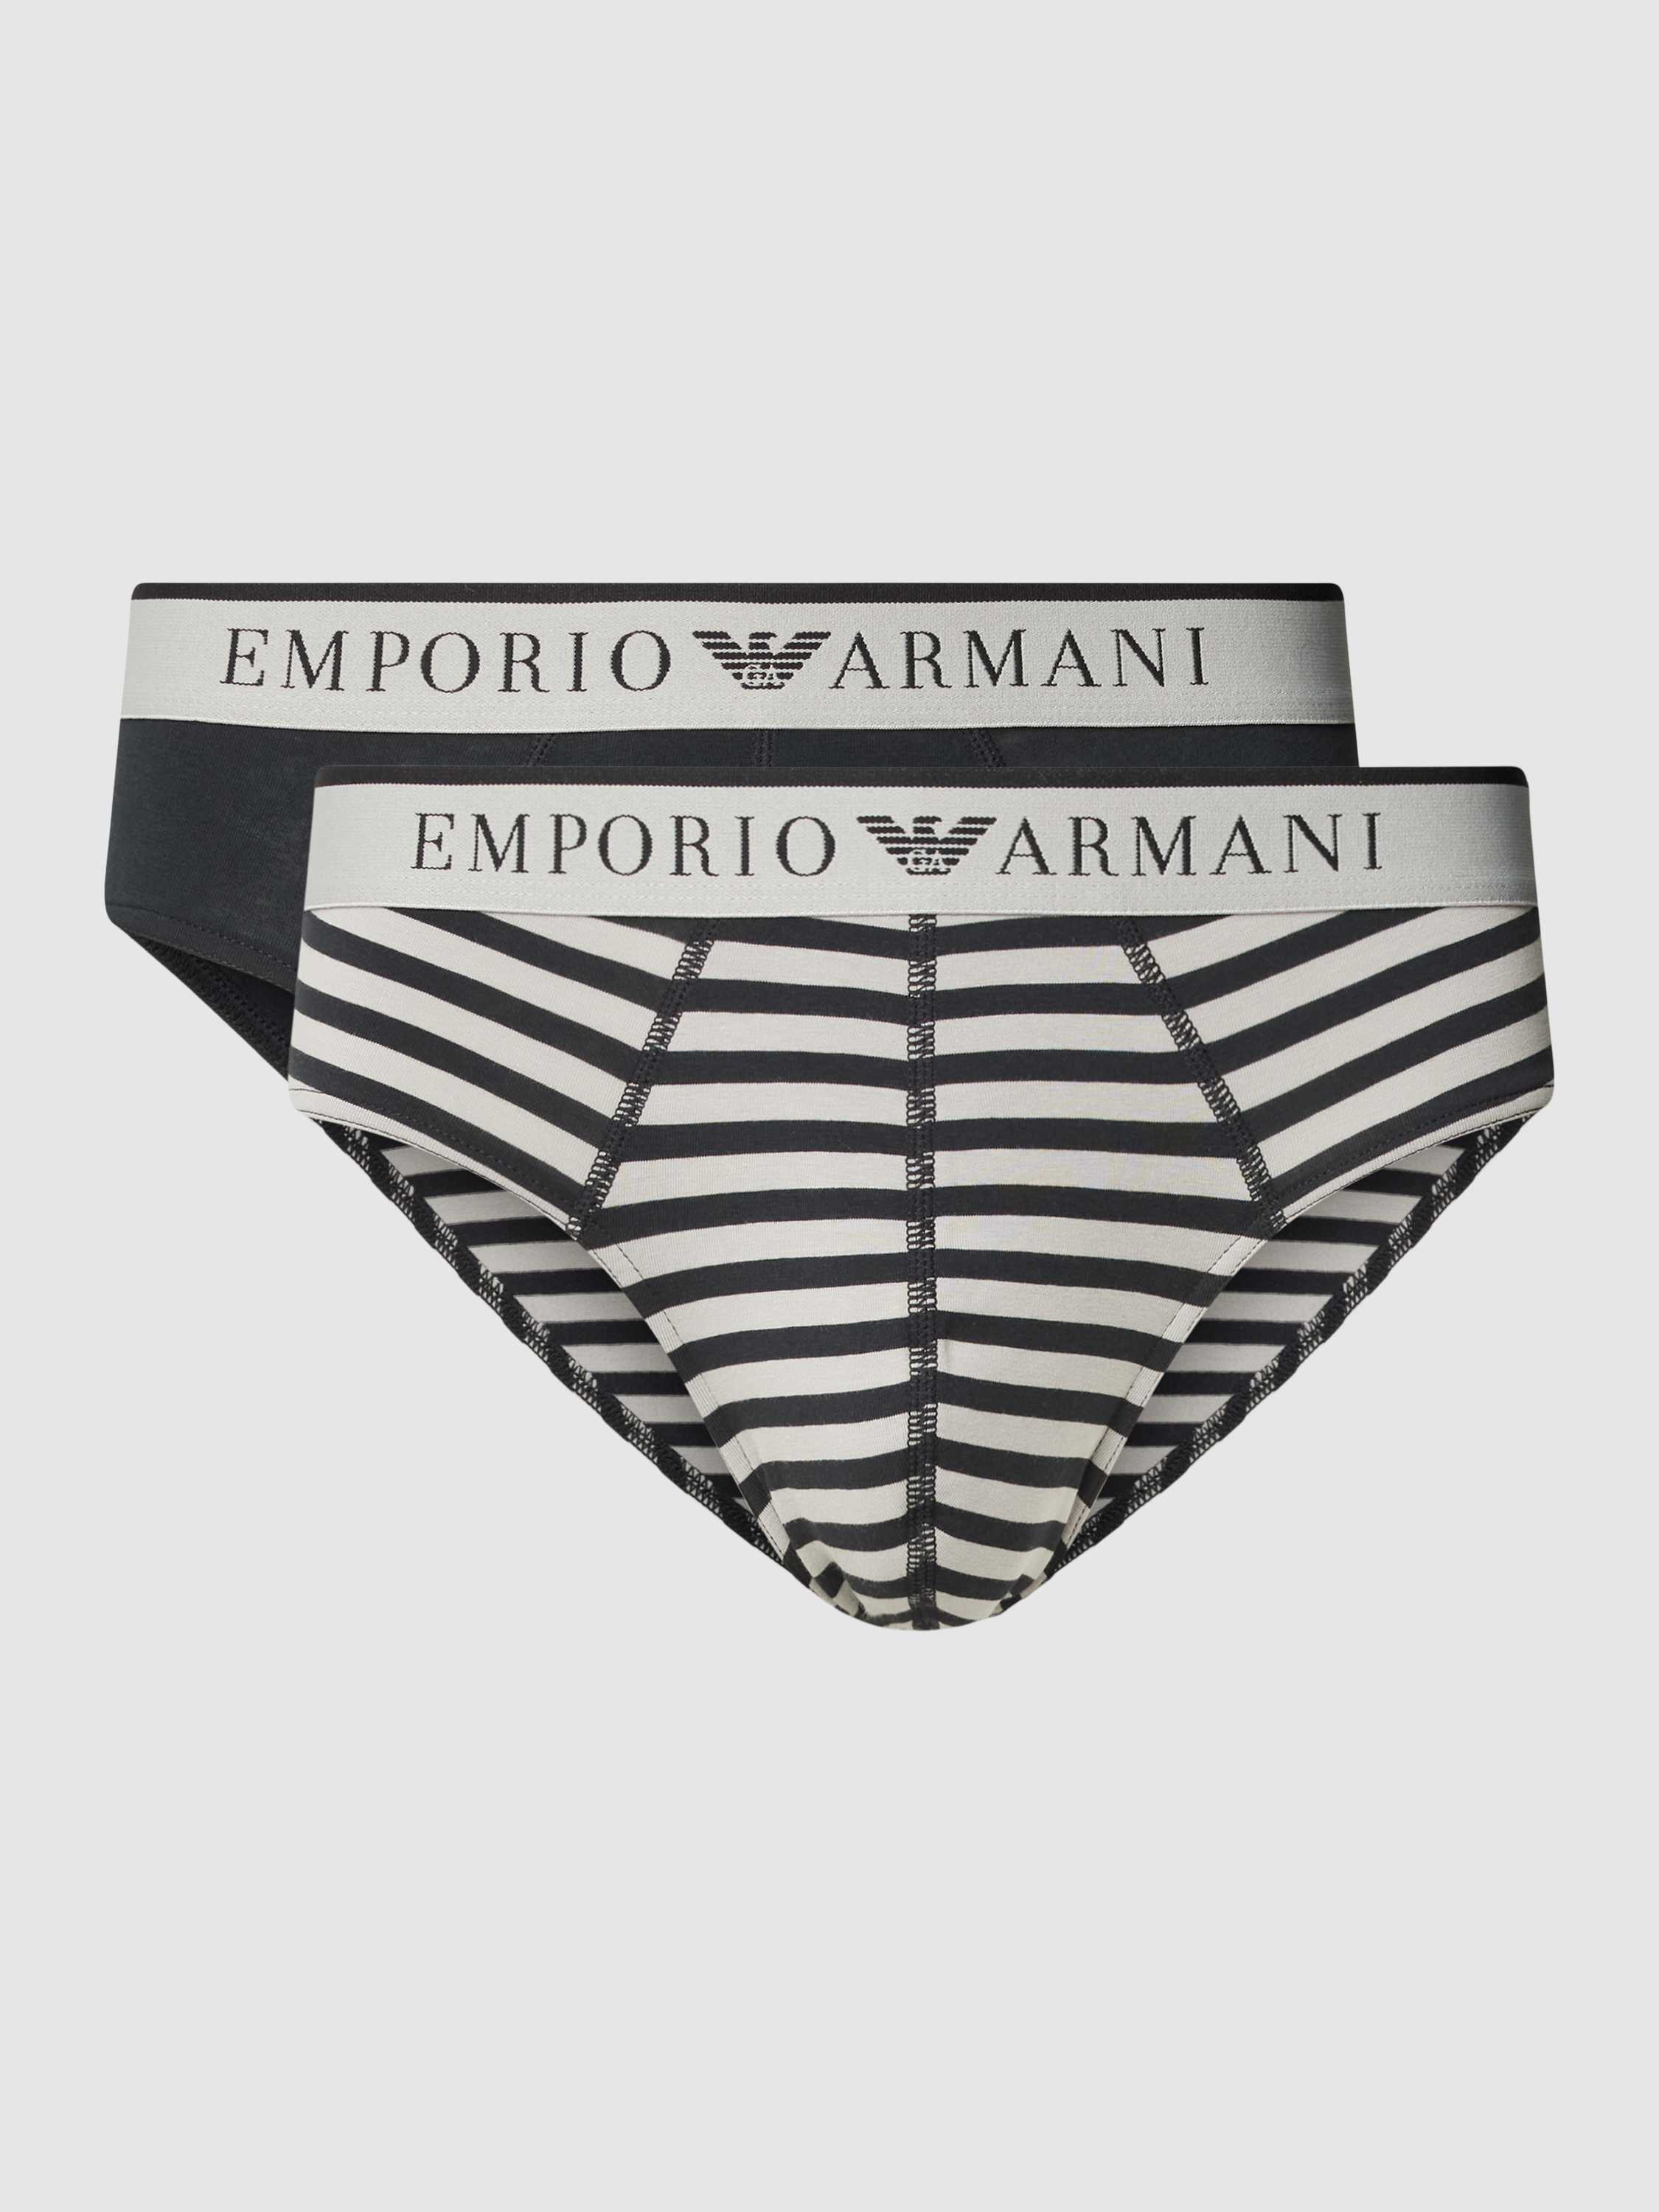 Emporio Armani Slip met label in band in een set van 2 stuks